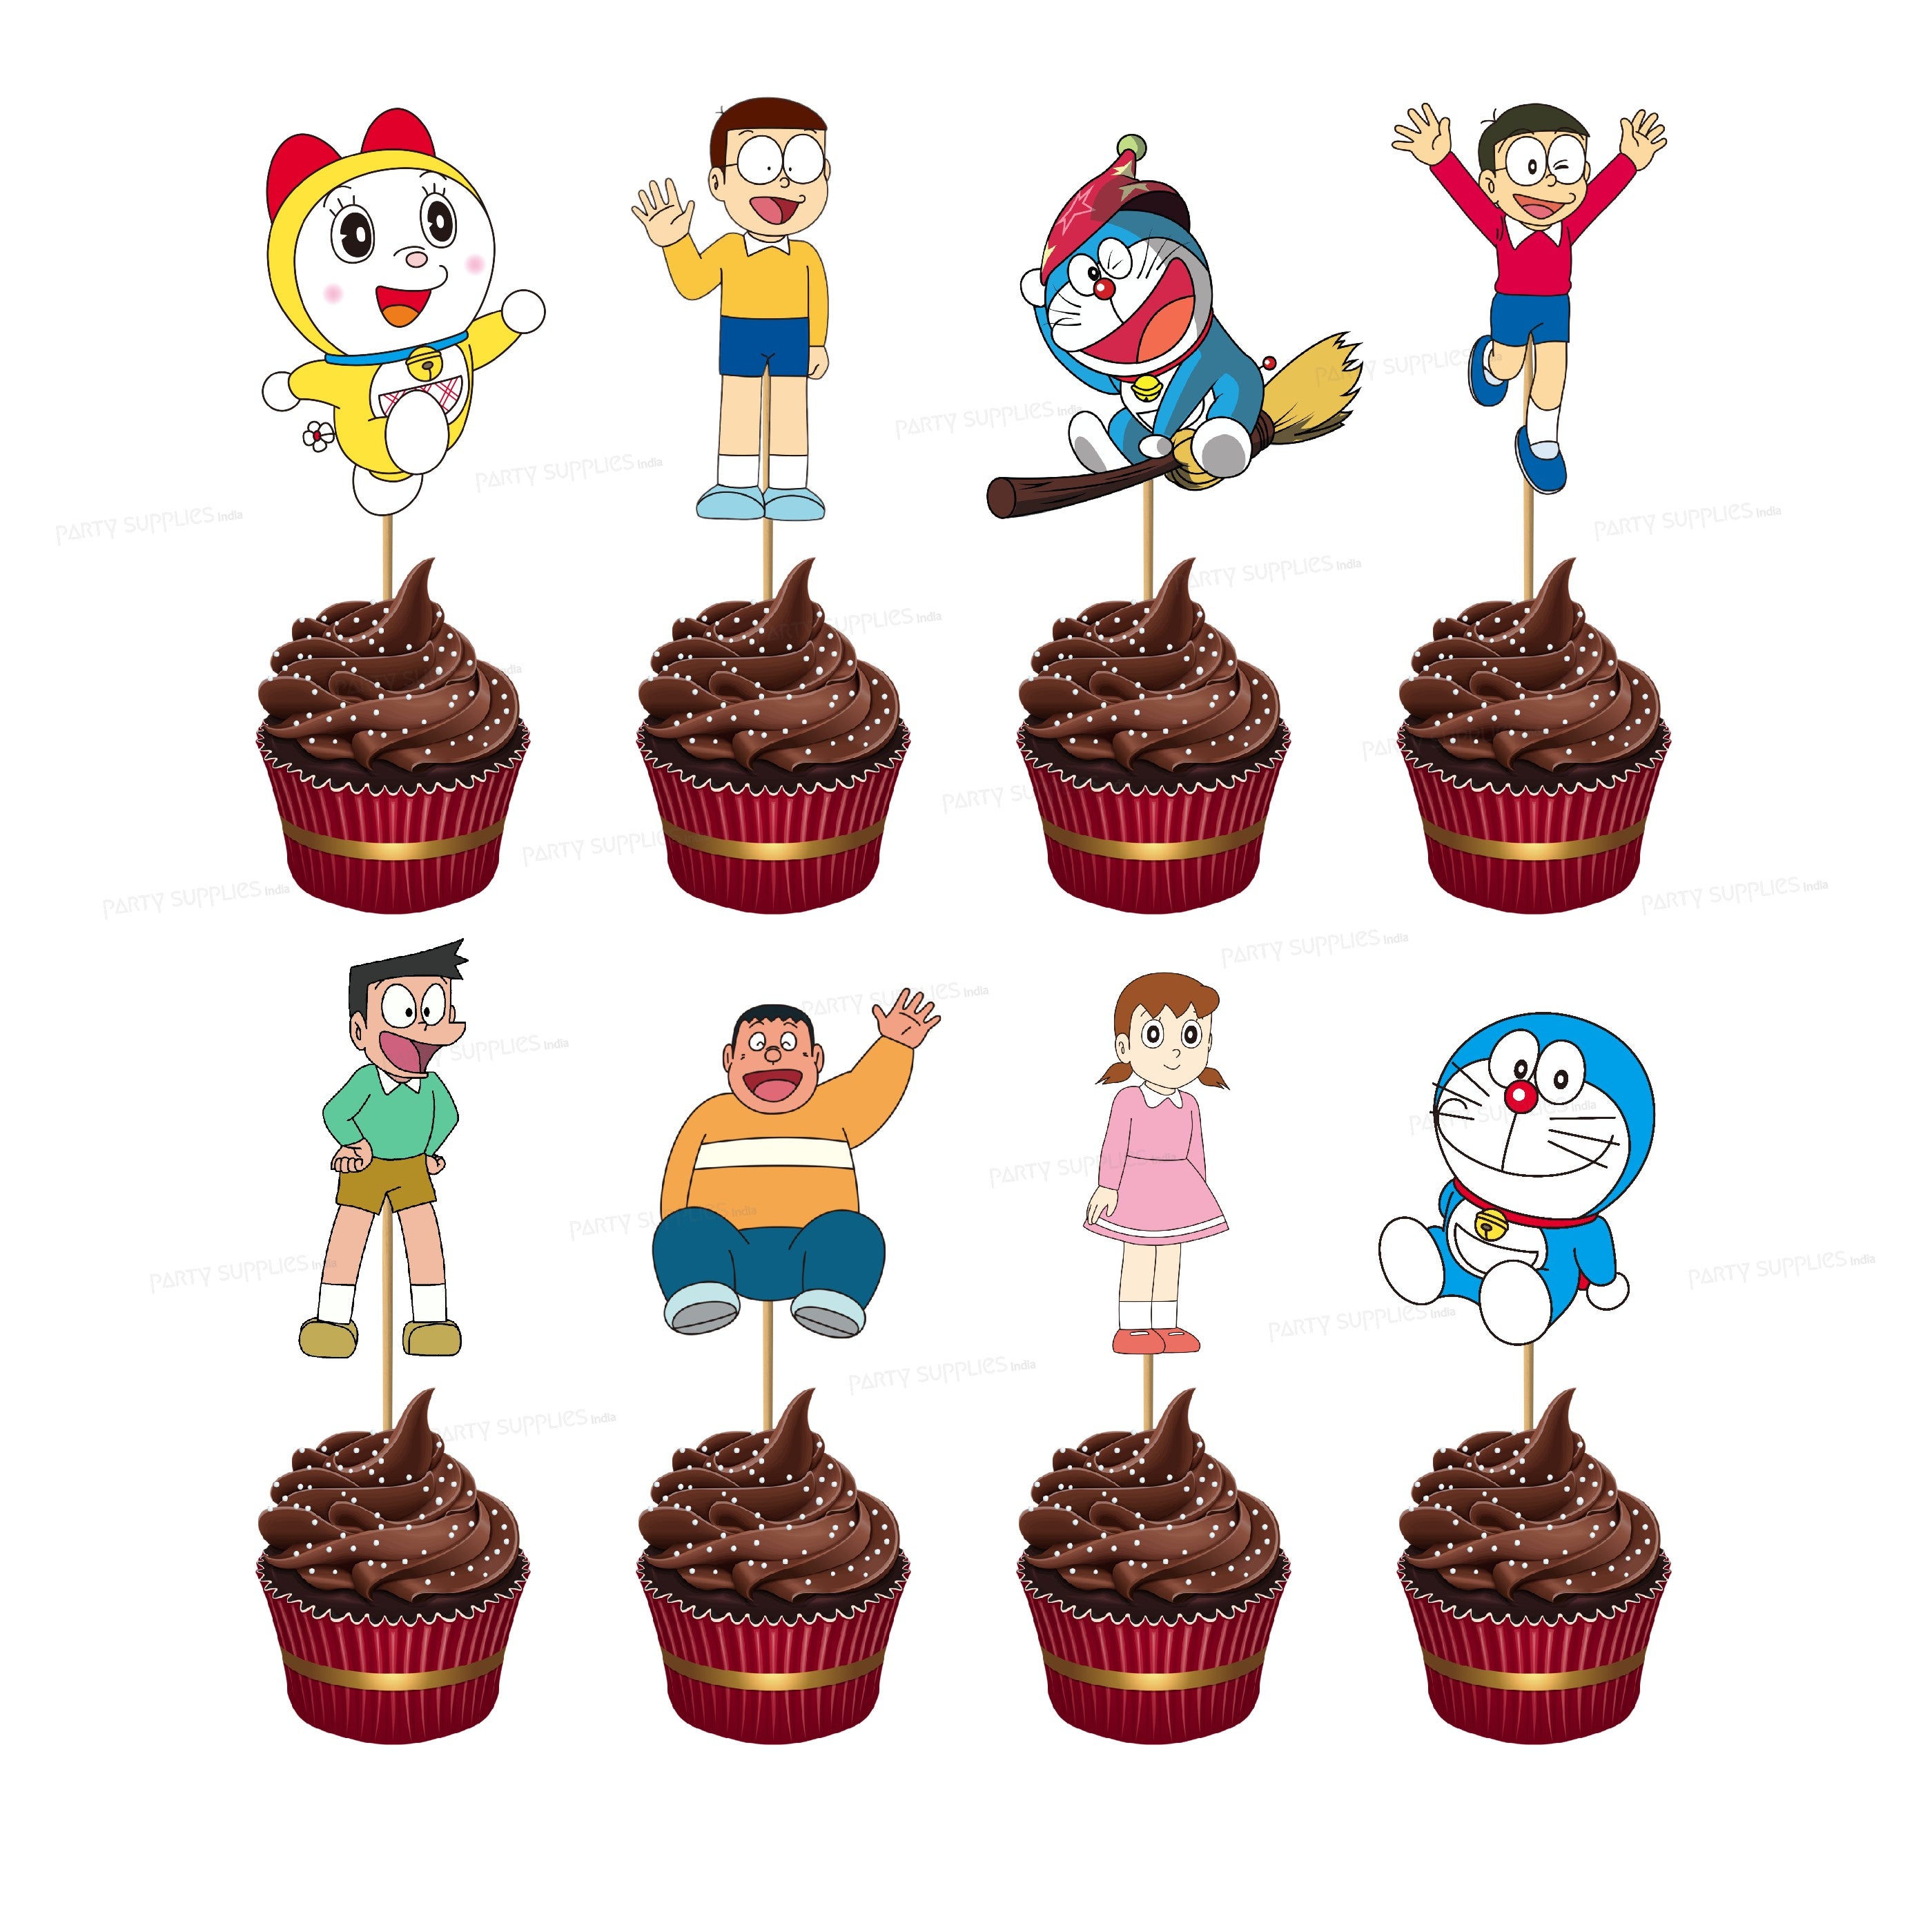 Doremon Dorami Cake | Cupcake cakes, Cake, Desserts